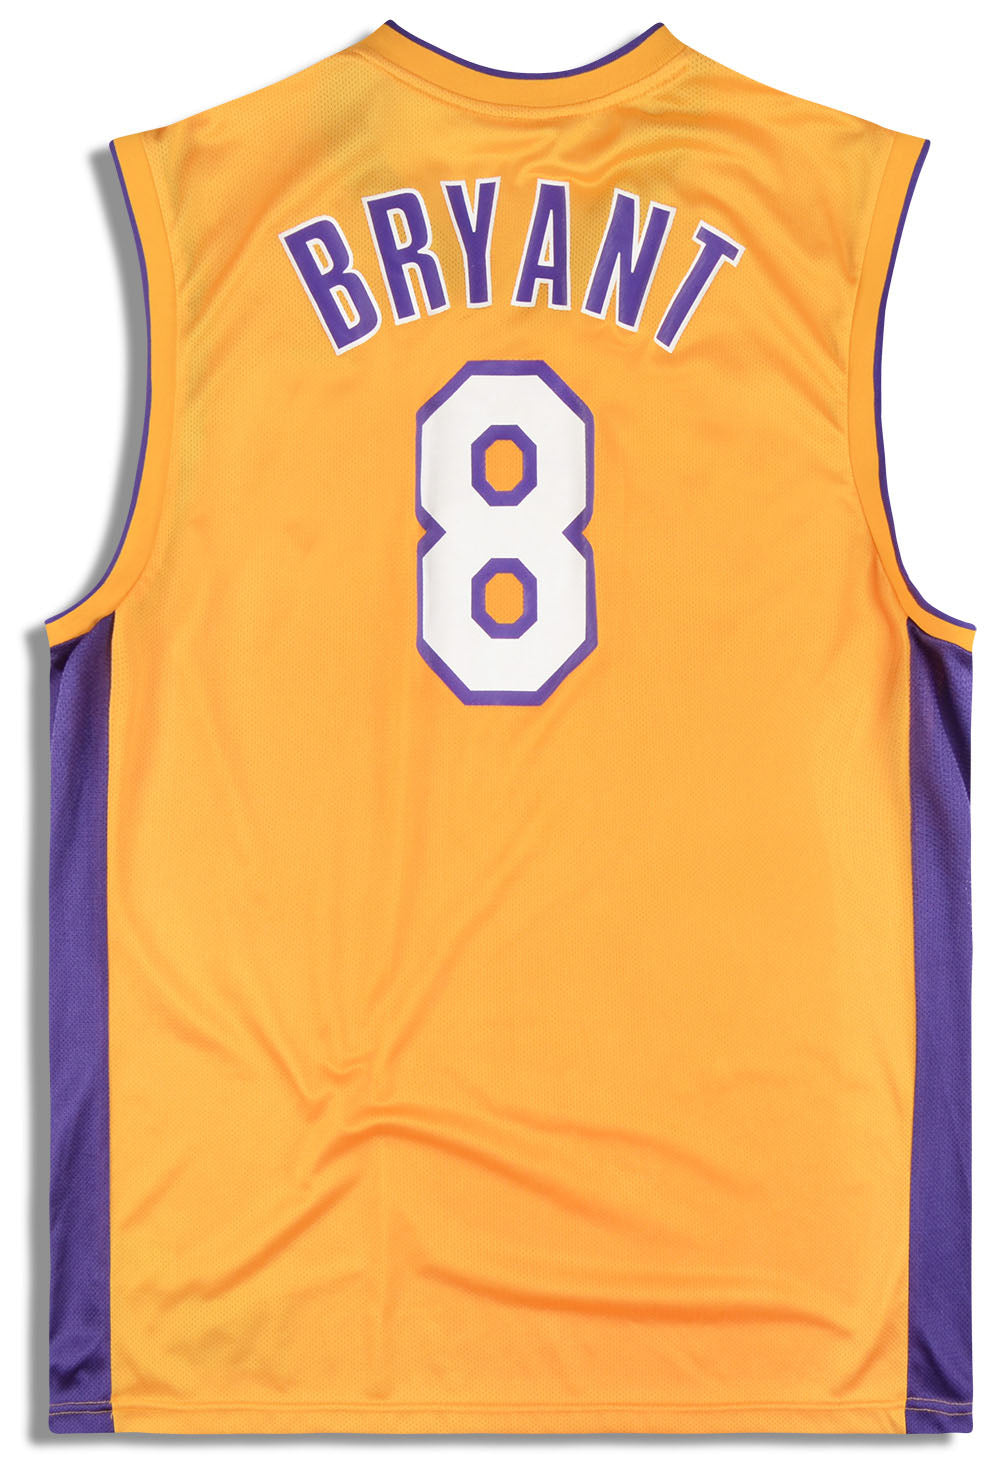 Kobe Bryant #8 LOS ANGELES LA LAKERS Reebok NBA jersey Kids Boys SZ (7)